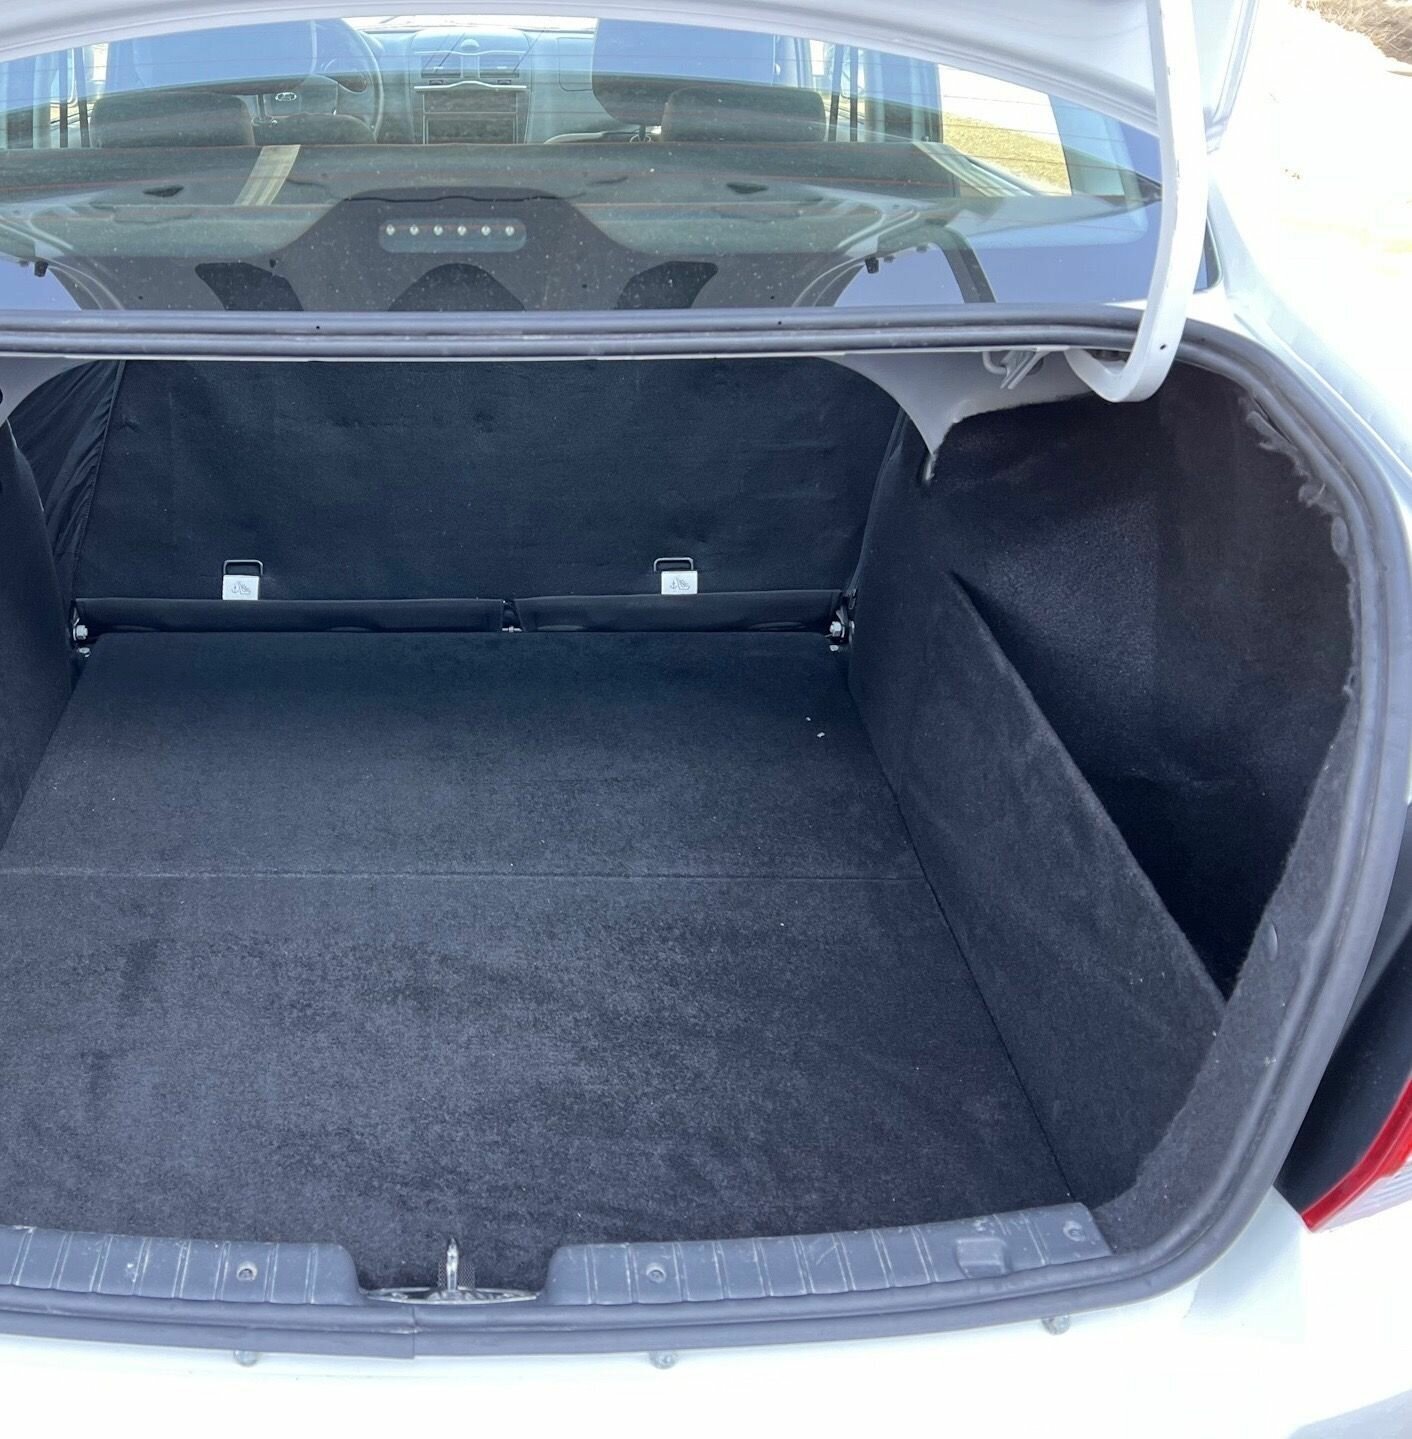 Органайзер в багажник для автомобиля Lada Granta Sedan. Багажные карманы для Лада Гранта Седан. Только в правую нишу